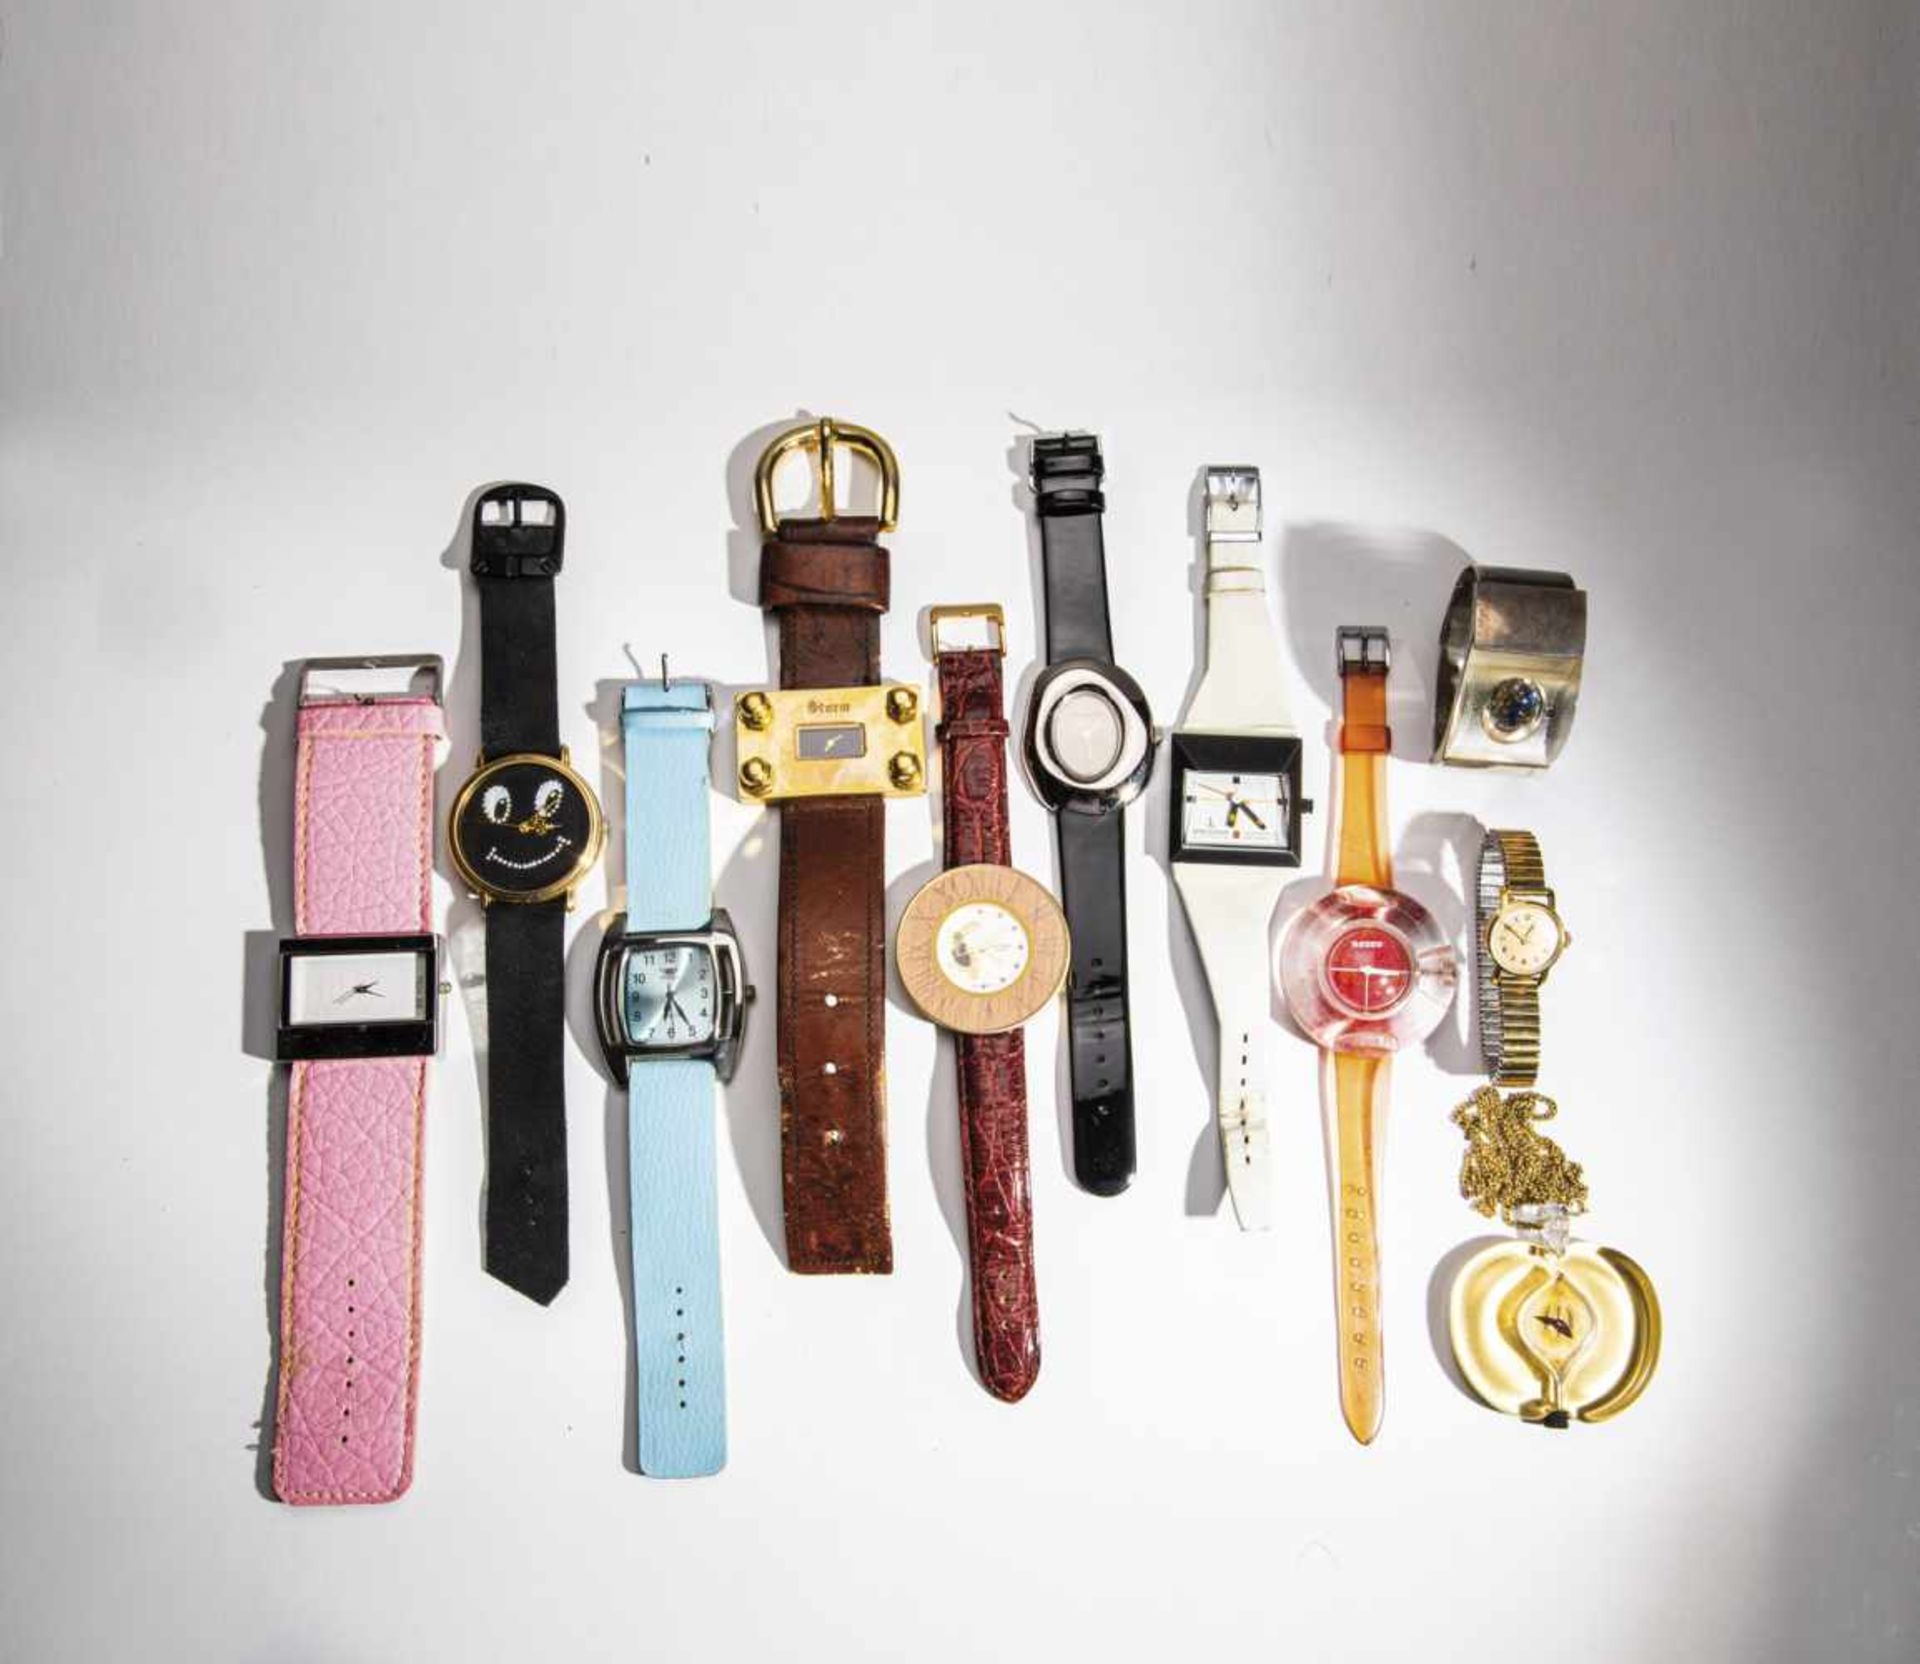 UhrenkonvolutZehn Armbanduhren aus unterschiedlichen Materialien, Werk und Ausführung sowie eine